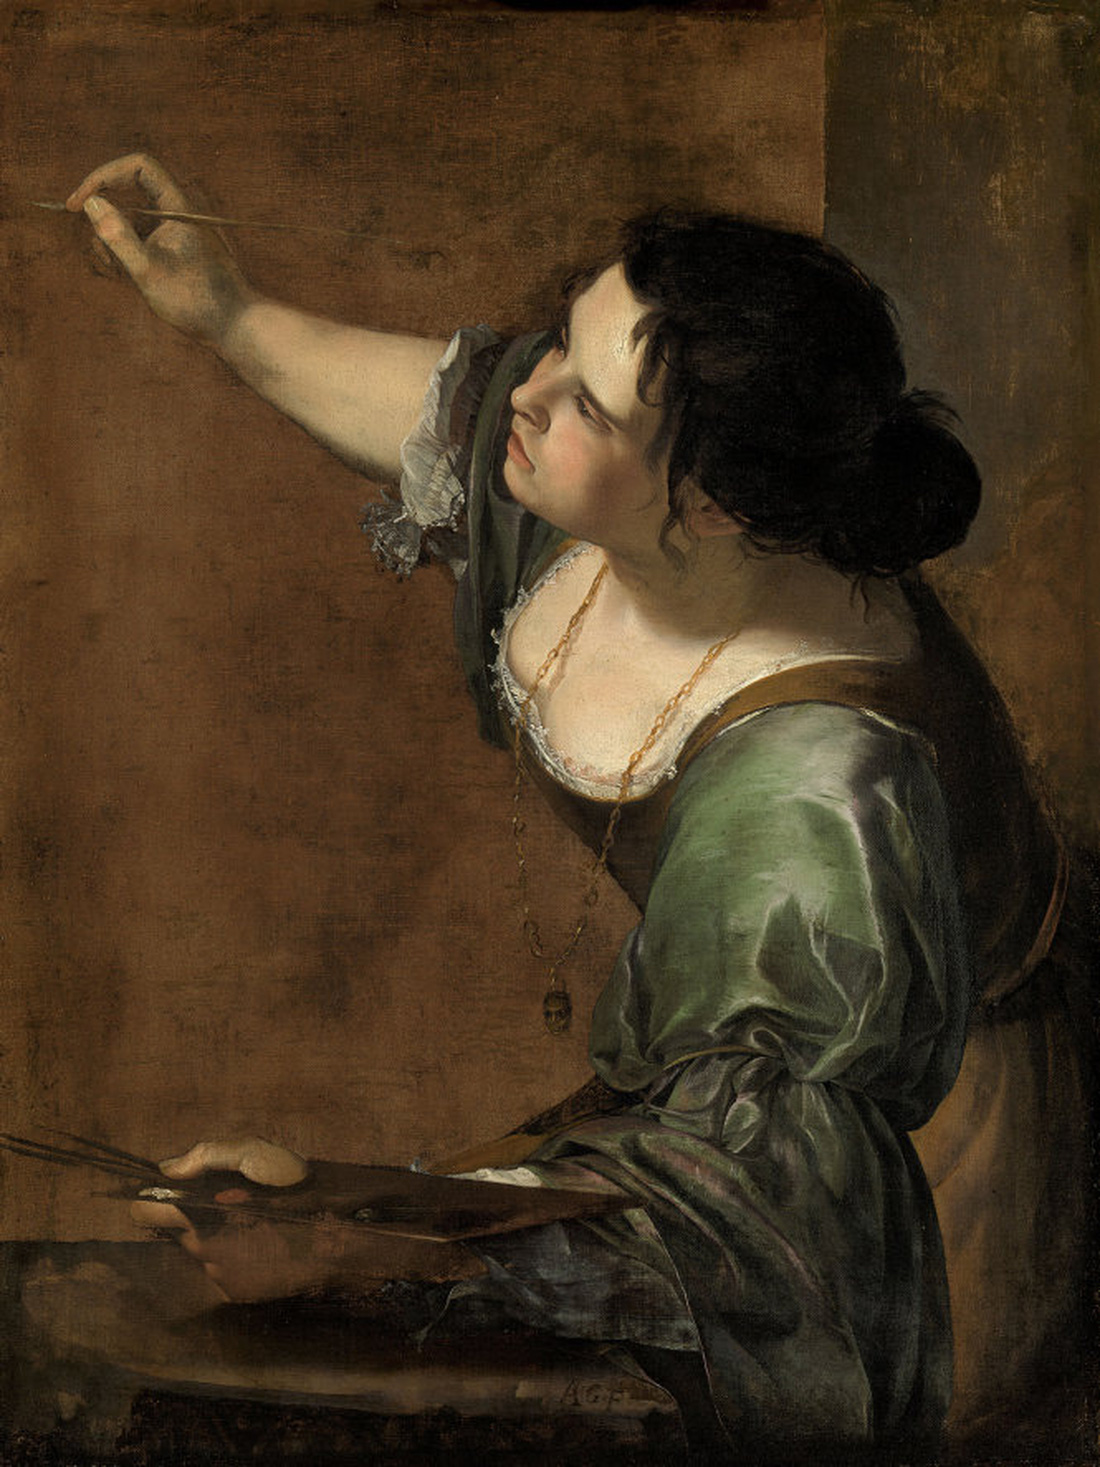 Nữ họa sĩ và 500 năm lộng lẫy: bất chấp định kiến, vẽ tranh khỏa thân - Ảnh 6.